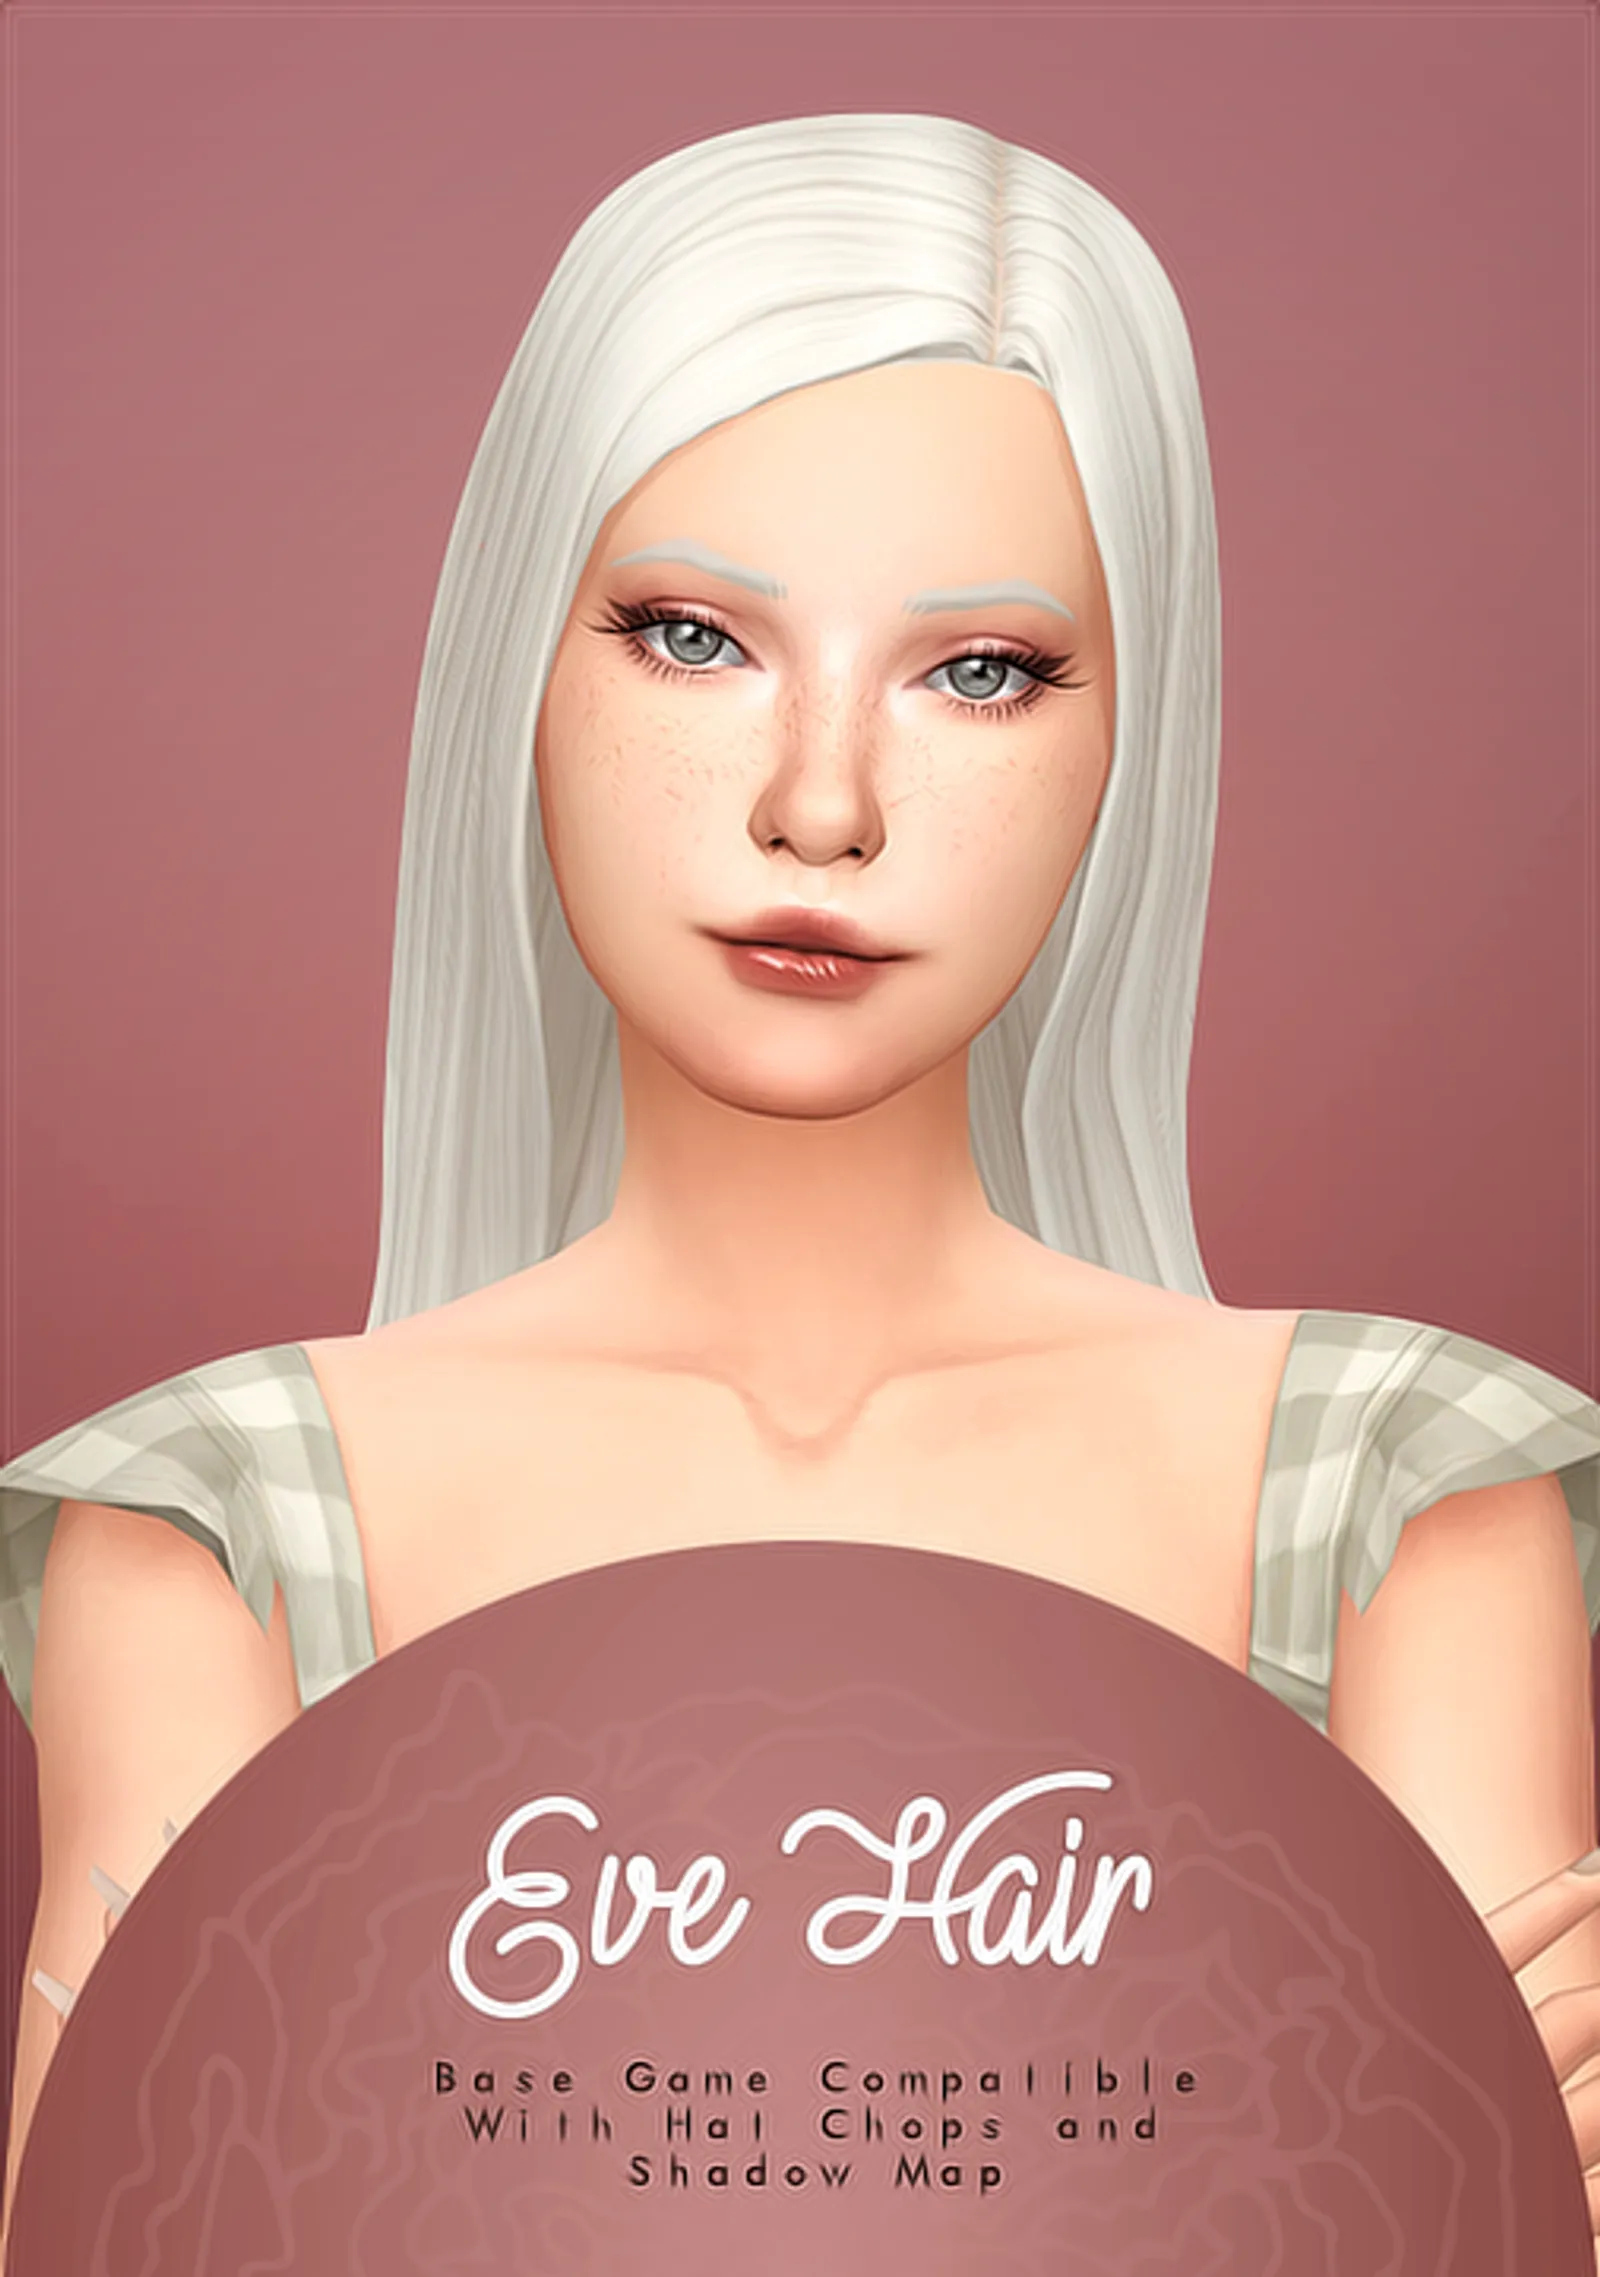 Eve Hair